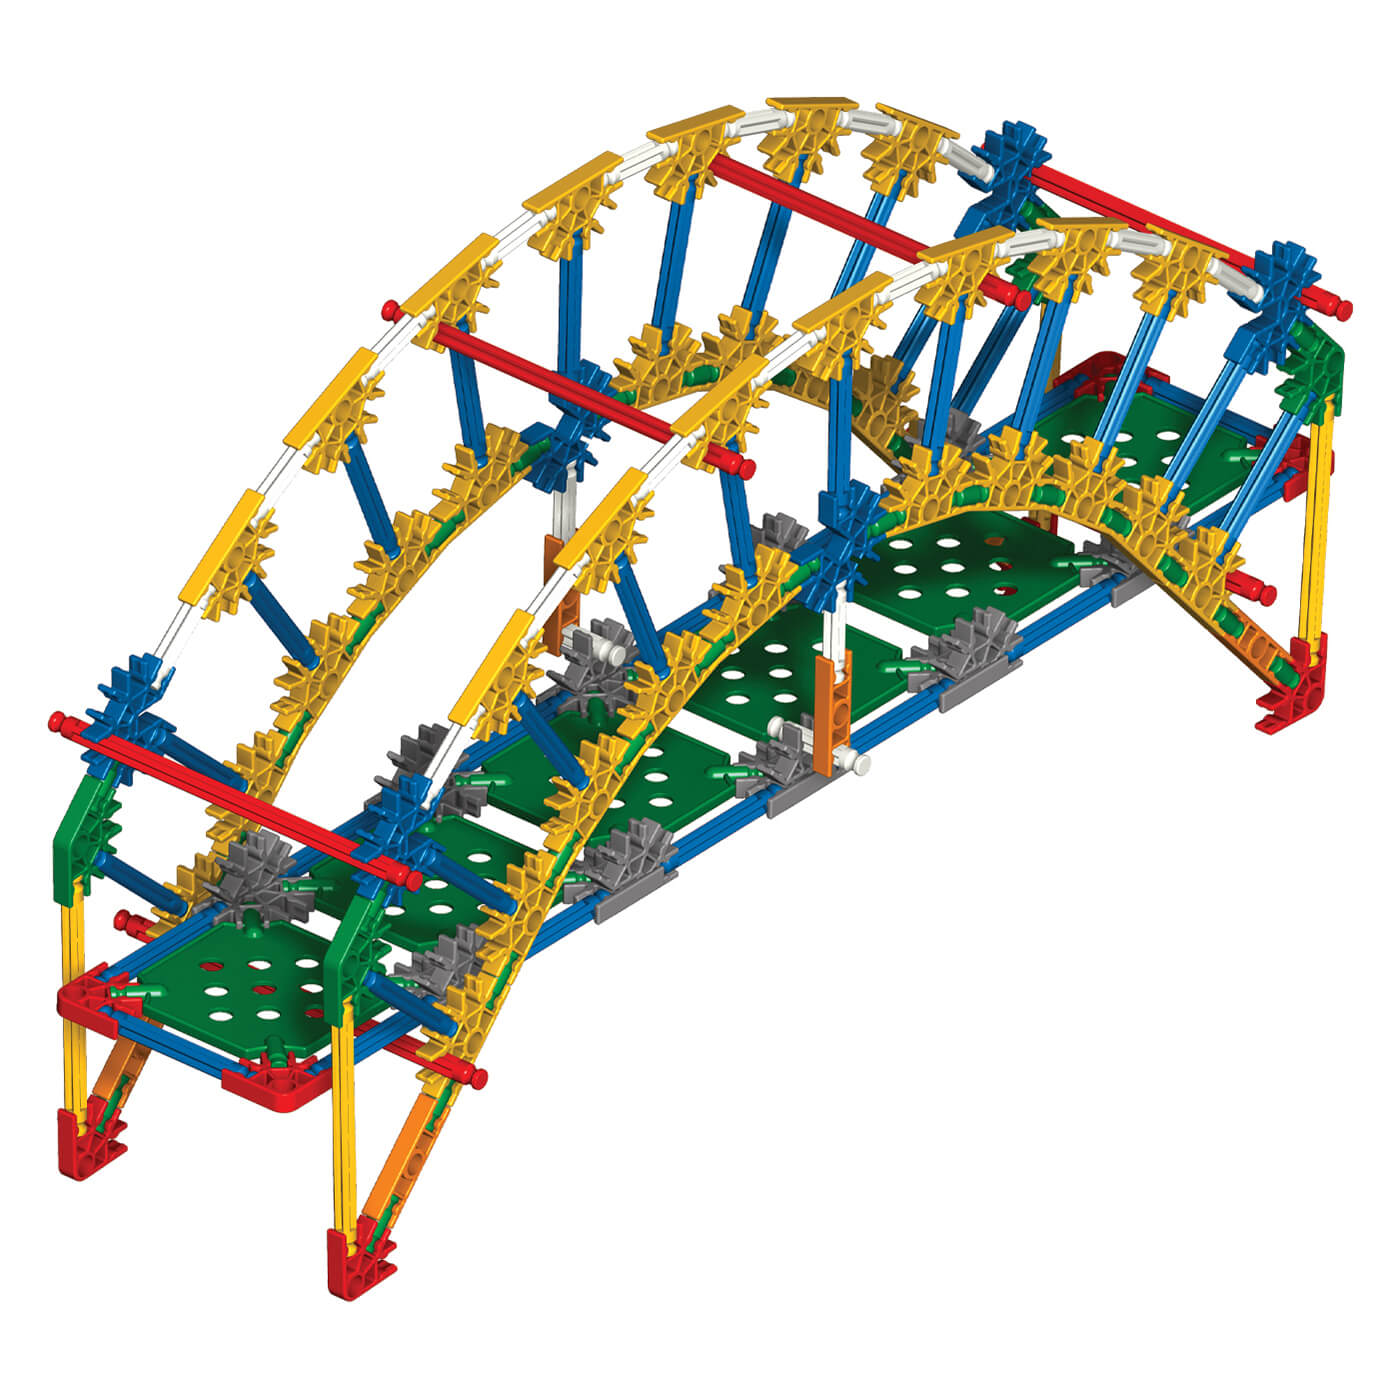 K'NEX Education Introduction to Structures: Bridges